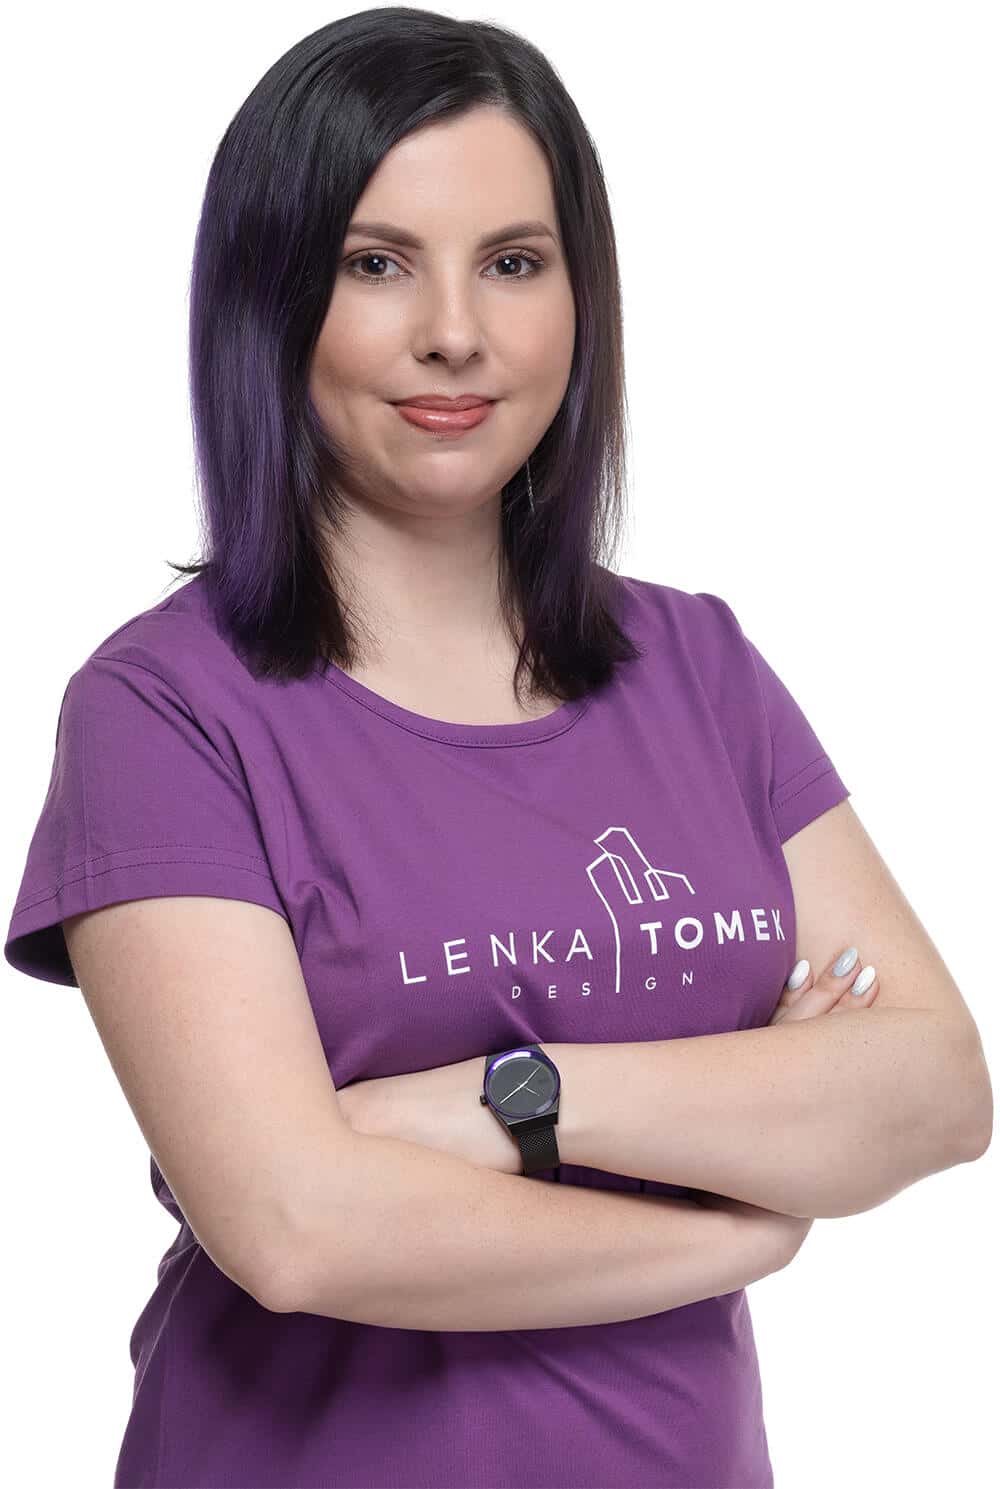 Lenka Tomek - interiérová designérka z Brna